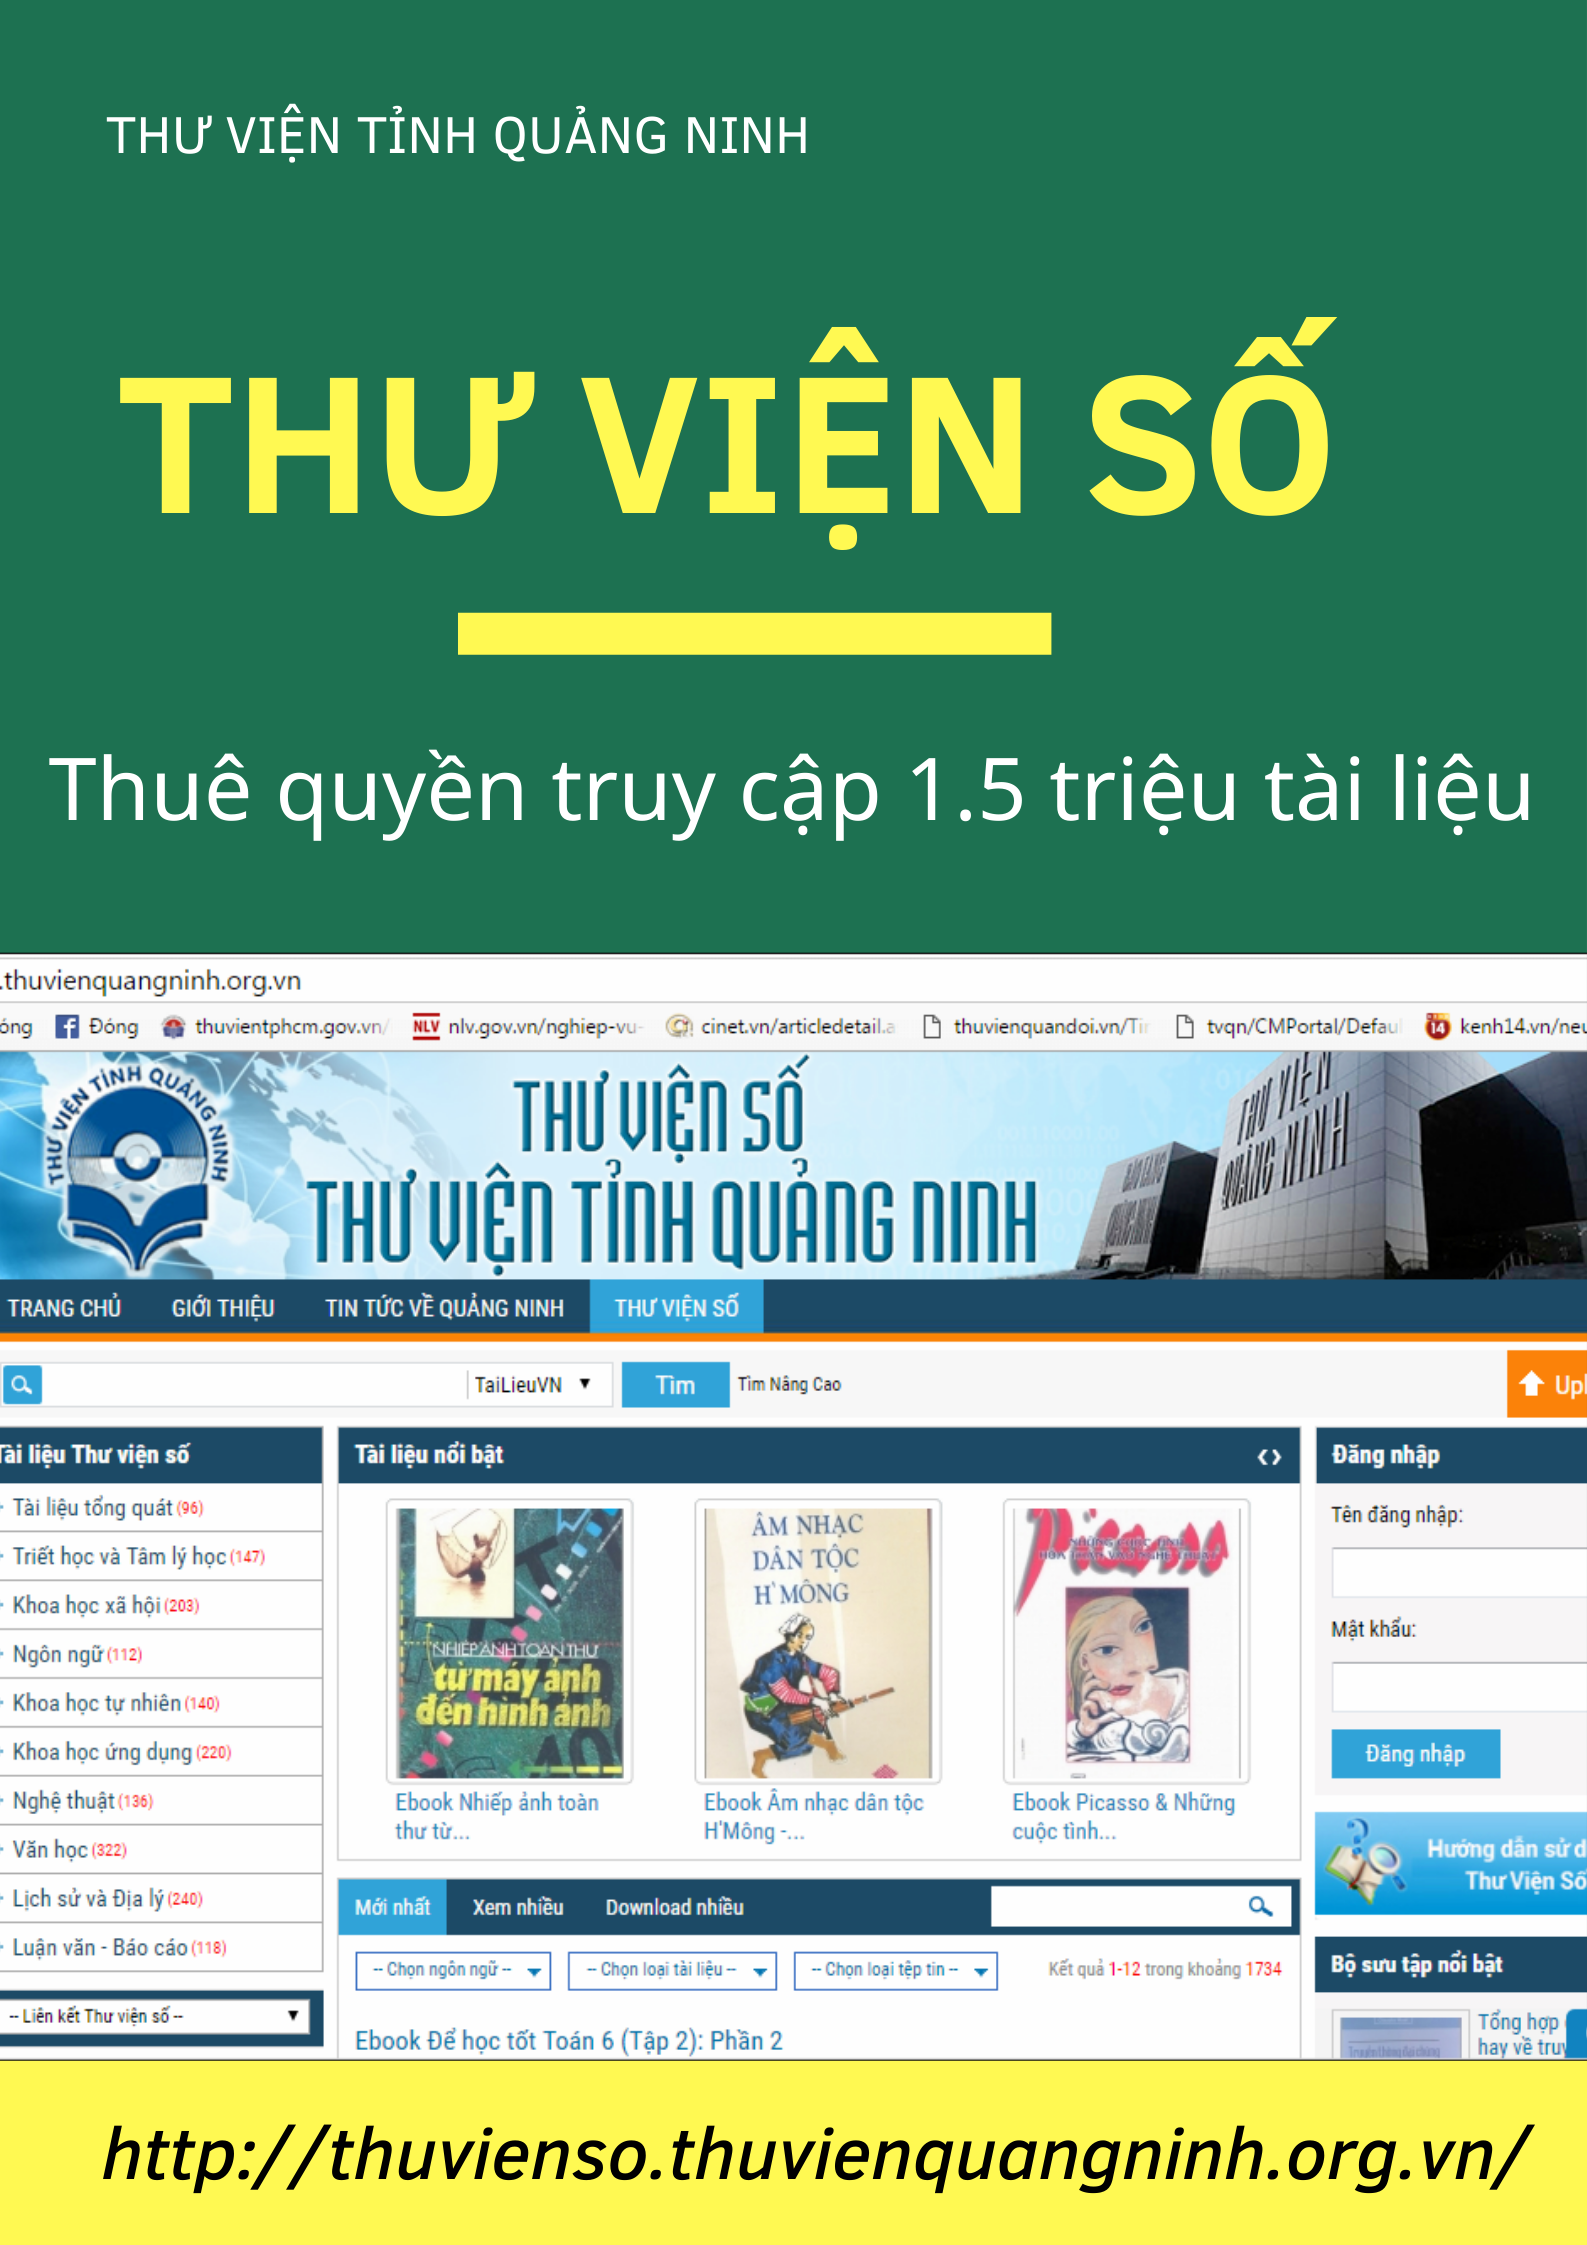 Thư viện tỉnh Quảng Ninh: Giới thiệu phần mềm Thư viện số 